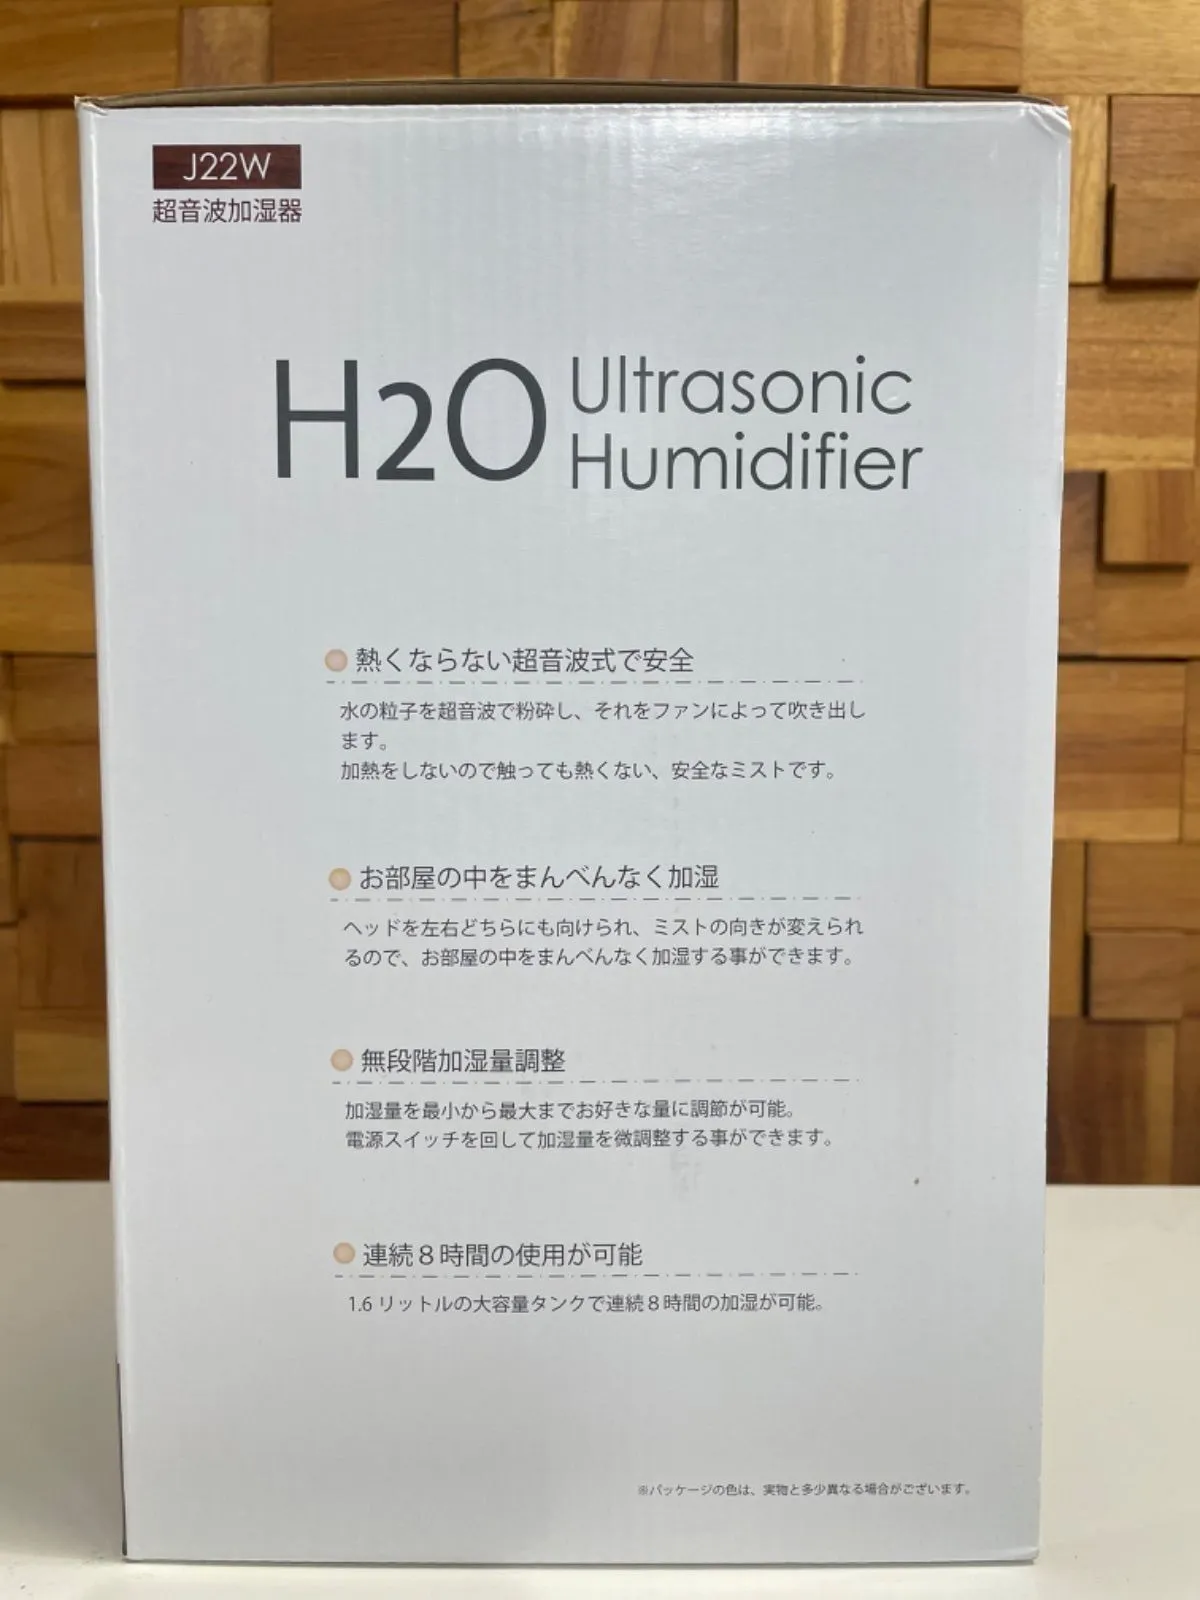 淀川区のリサイクルショップの中古家電・販売は当店で！新品 H2O 超音波加湿器が入荷致しました！！